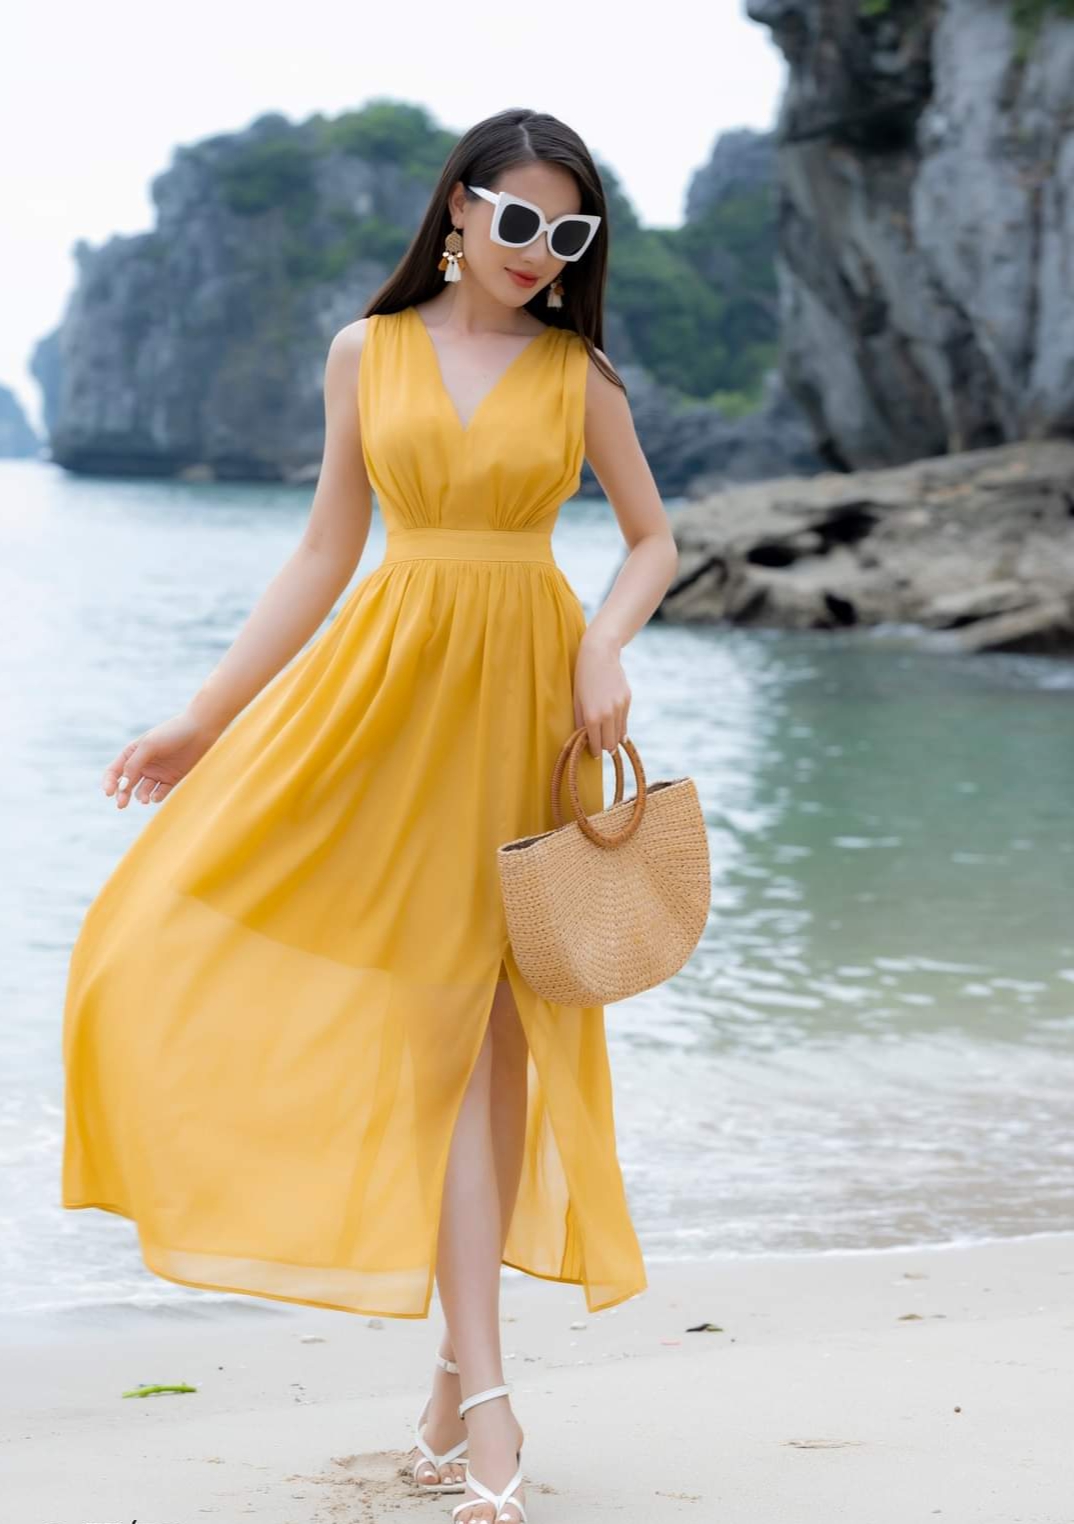 Học sao Việt chọn váy vàng đi chơi Tết vừa nổi bật vừa mang lại may mắn